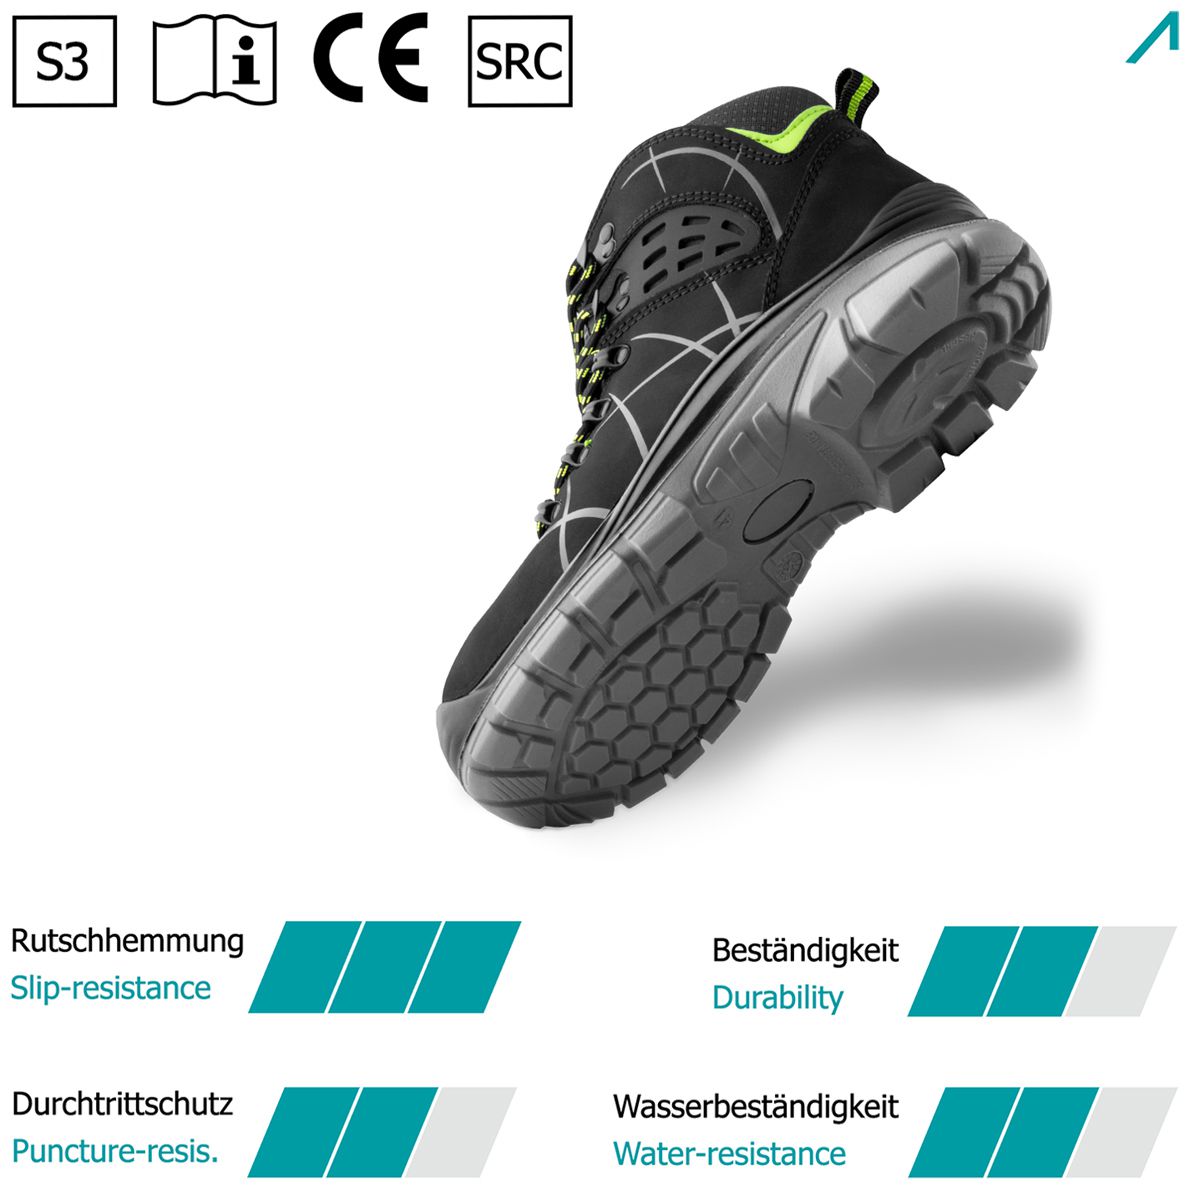 ACE Constructor High S3-Arbeits-Stiefel - mit Stahlkappe - Sicherheits-Schuhe für die Arbeit  - Schwarz/Grün